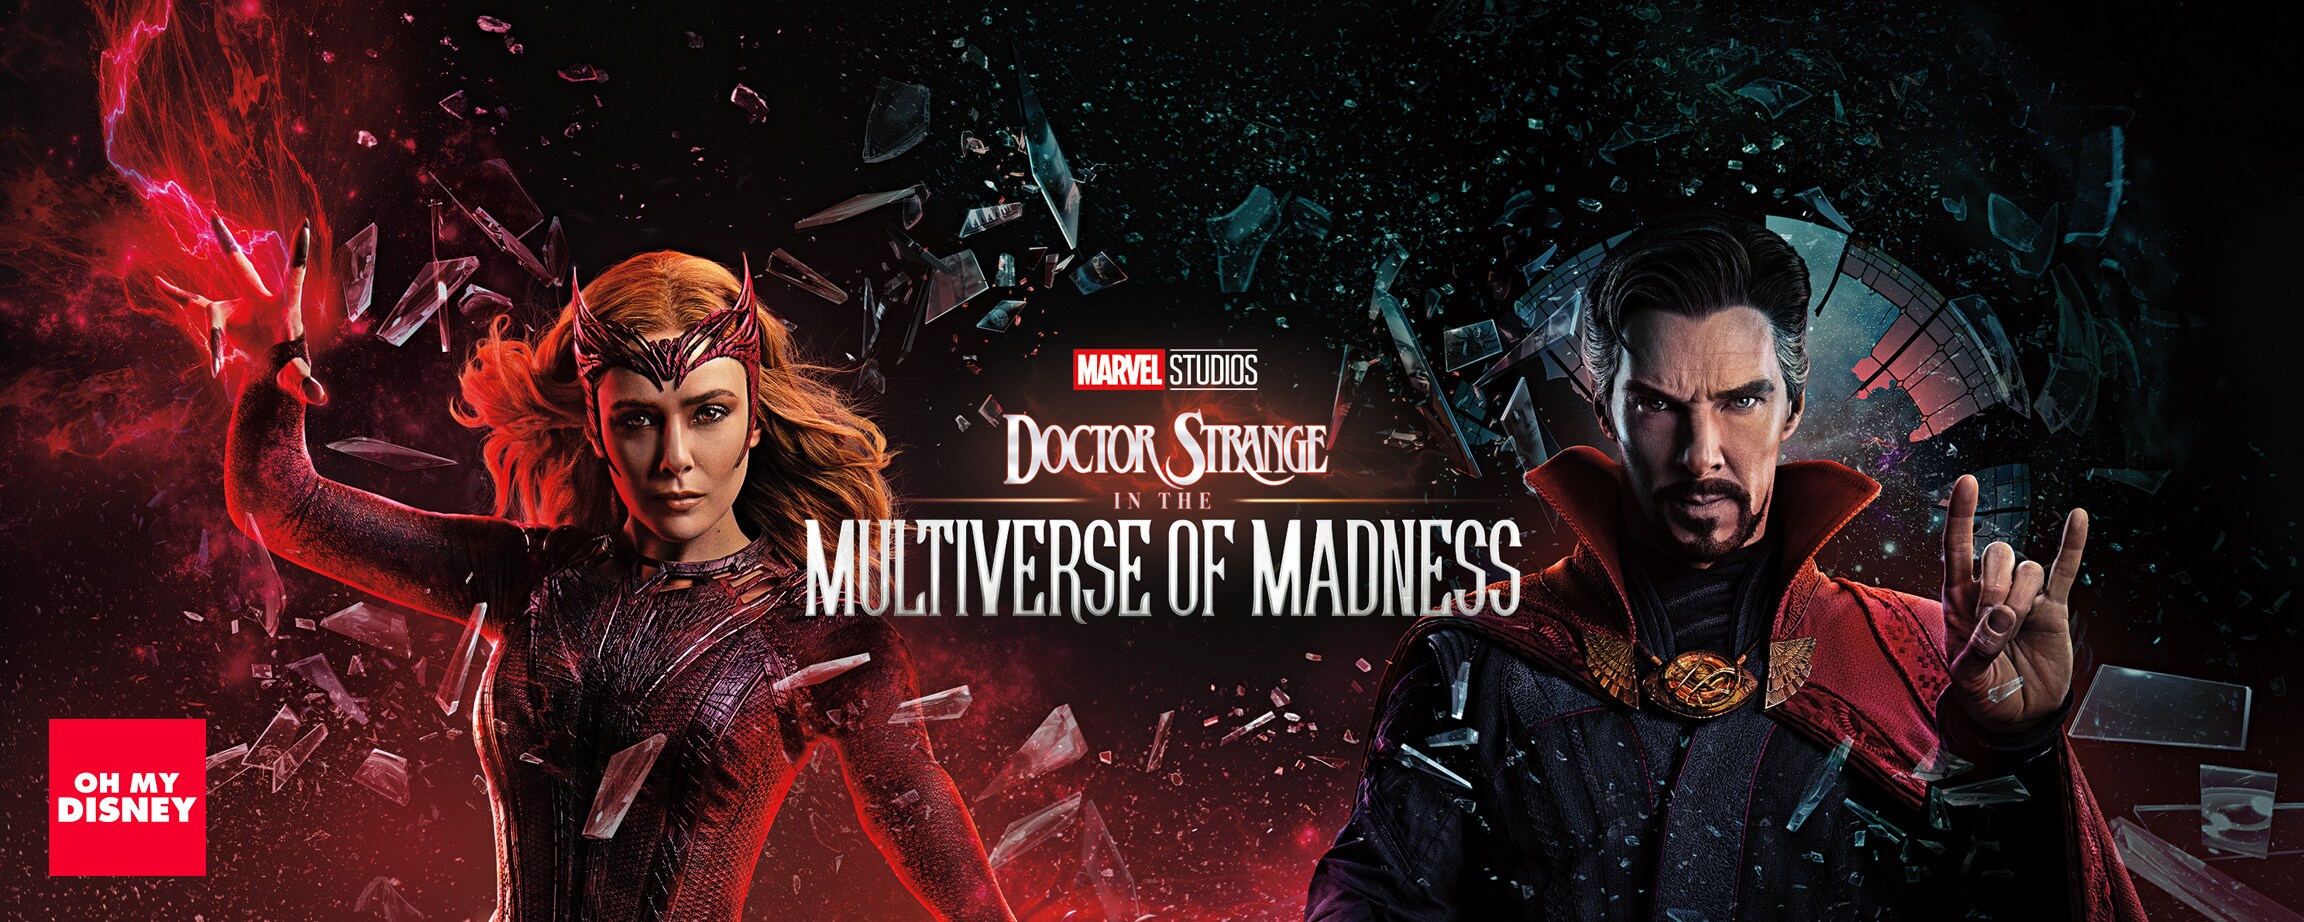 Persiapkan Gadget Kamu untuk Marvel Studios’ Doctor Strange In The Multiverse Of Madness dengan Mobile dan Video Call Wallpaper!